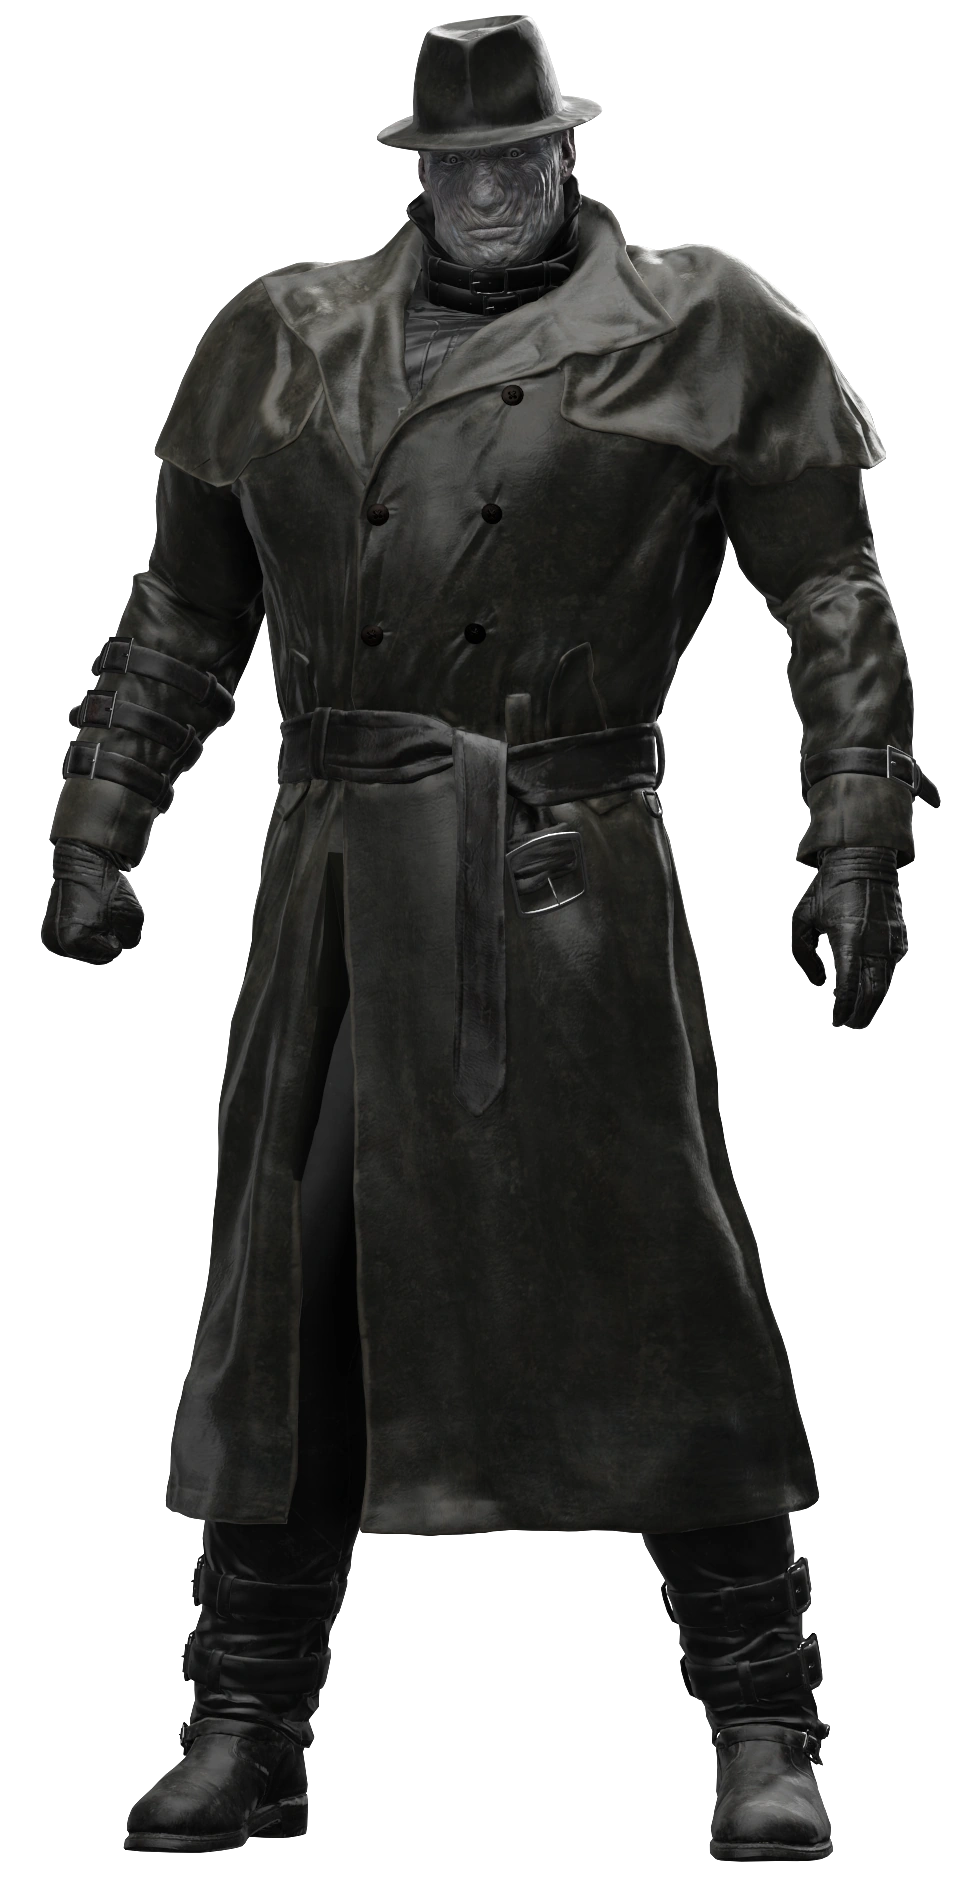 Mr X. (Resident Evil) Custom Action Figure